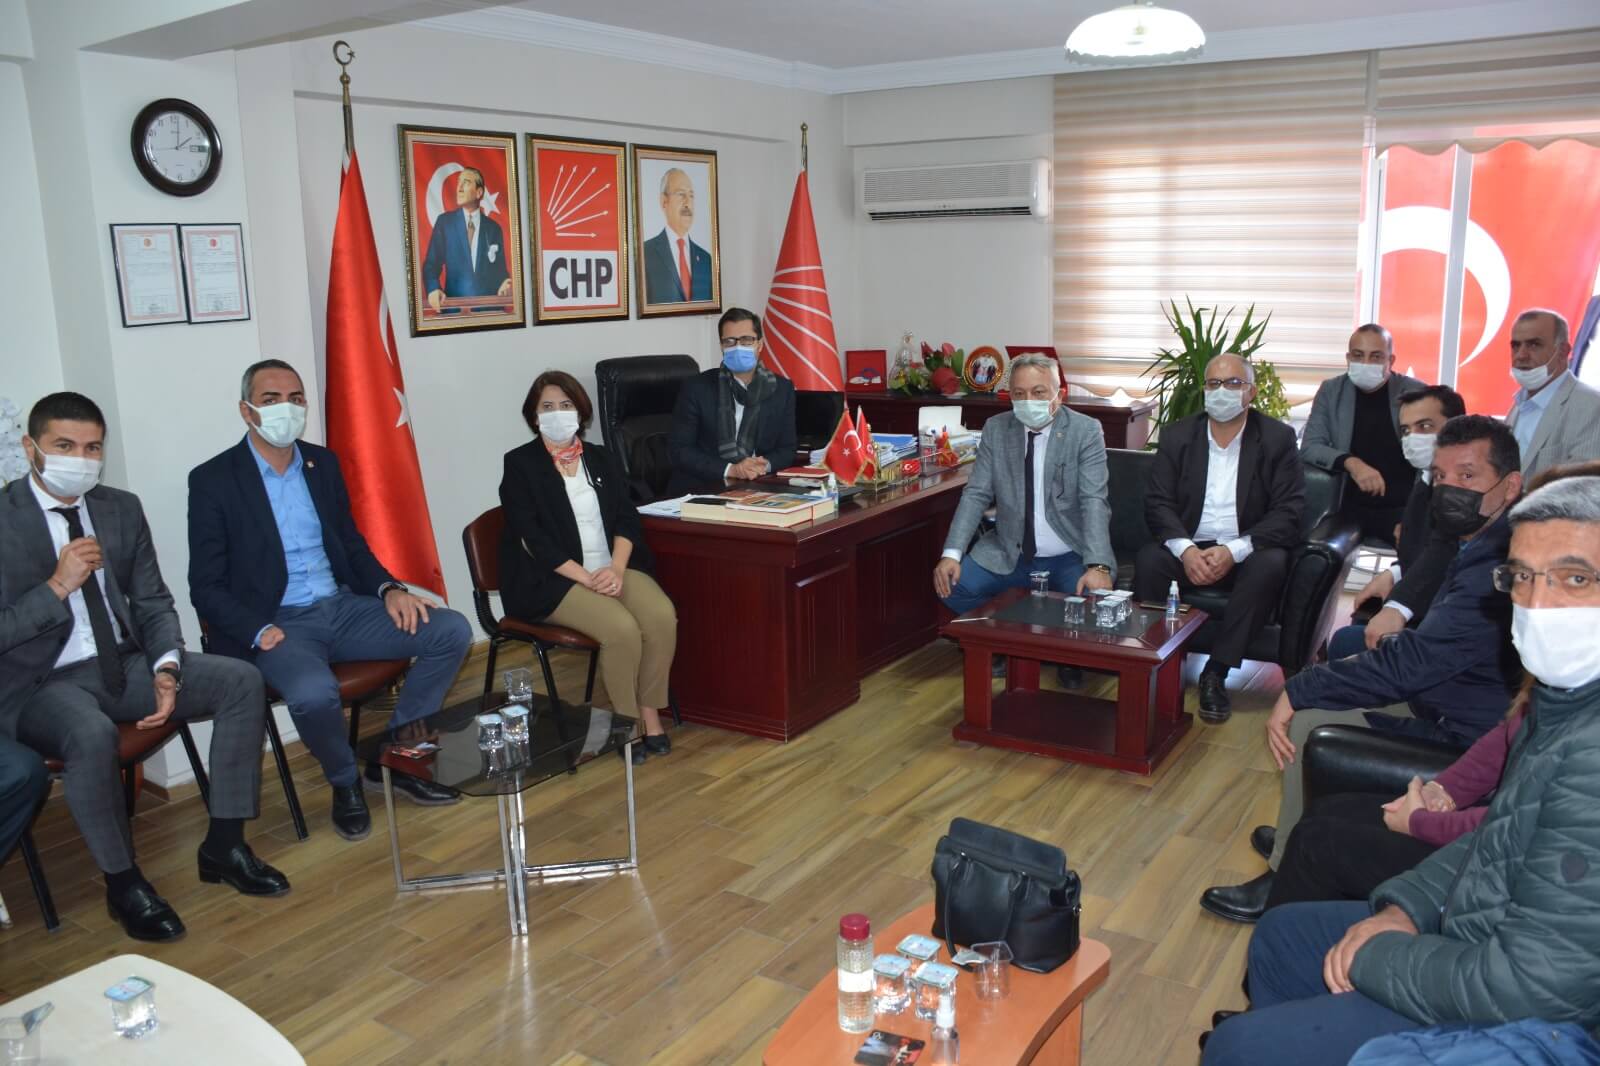 Menemen Belediyesi Başkan Vekili Deniz Karakurt: “Hak ve demokrasi mücadelemiz sonuna kadar devam edecek”